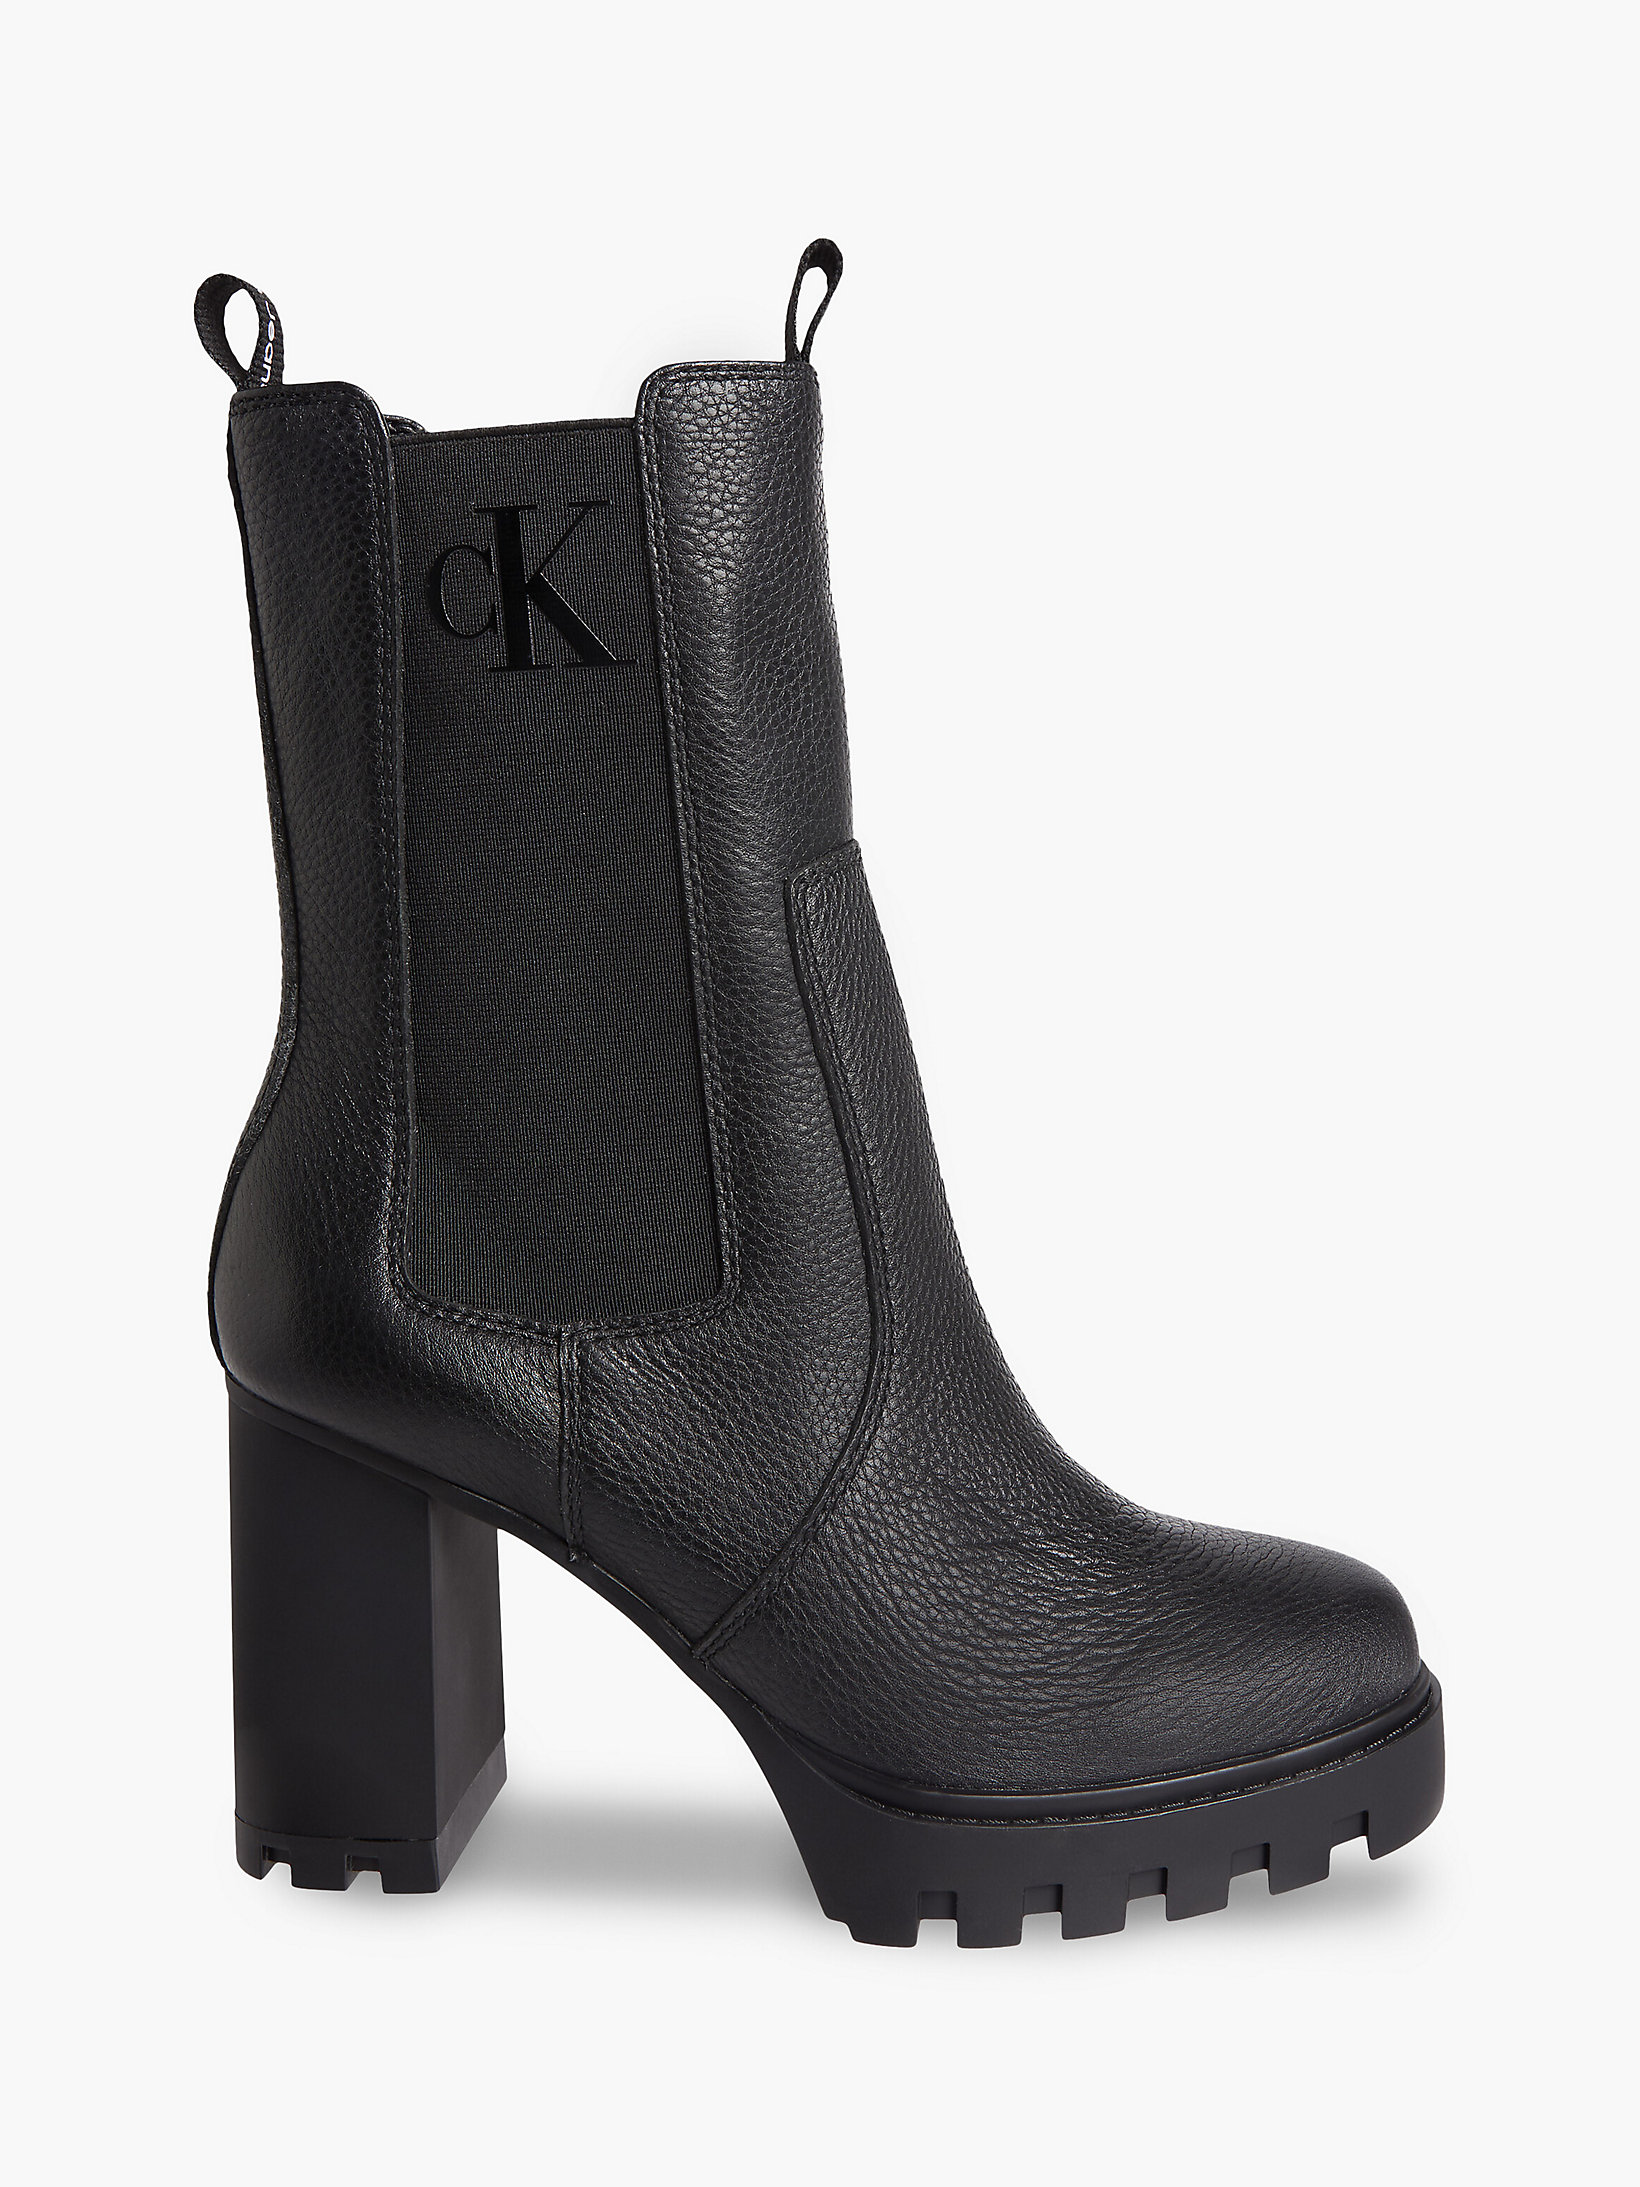 Black Leather Heeled Platform Boots undefined women Calvin Klein